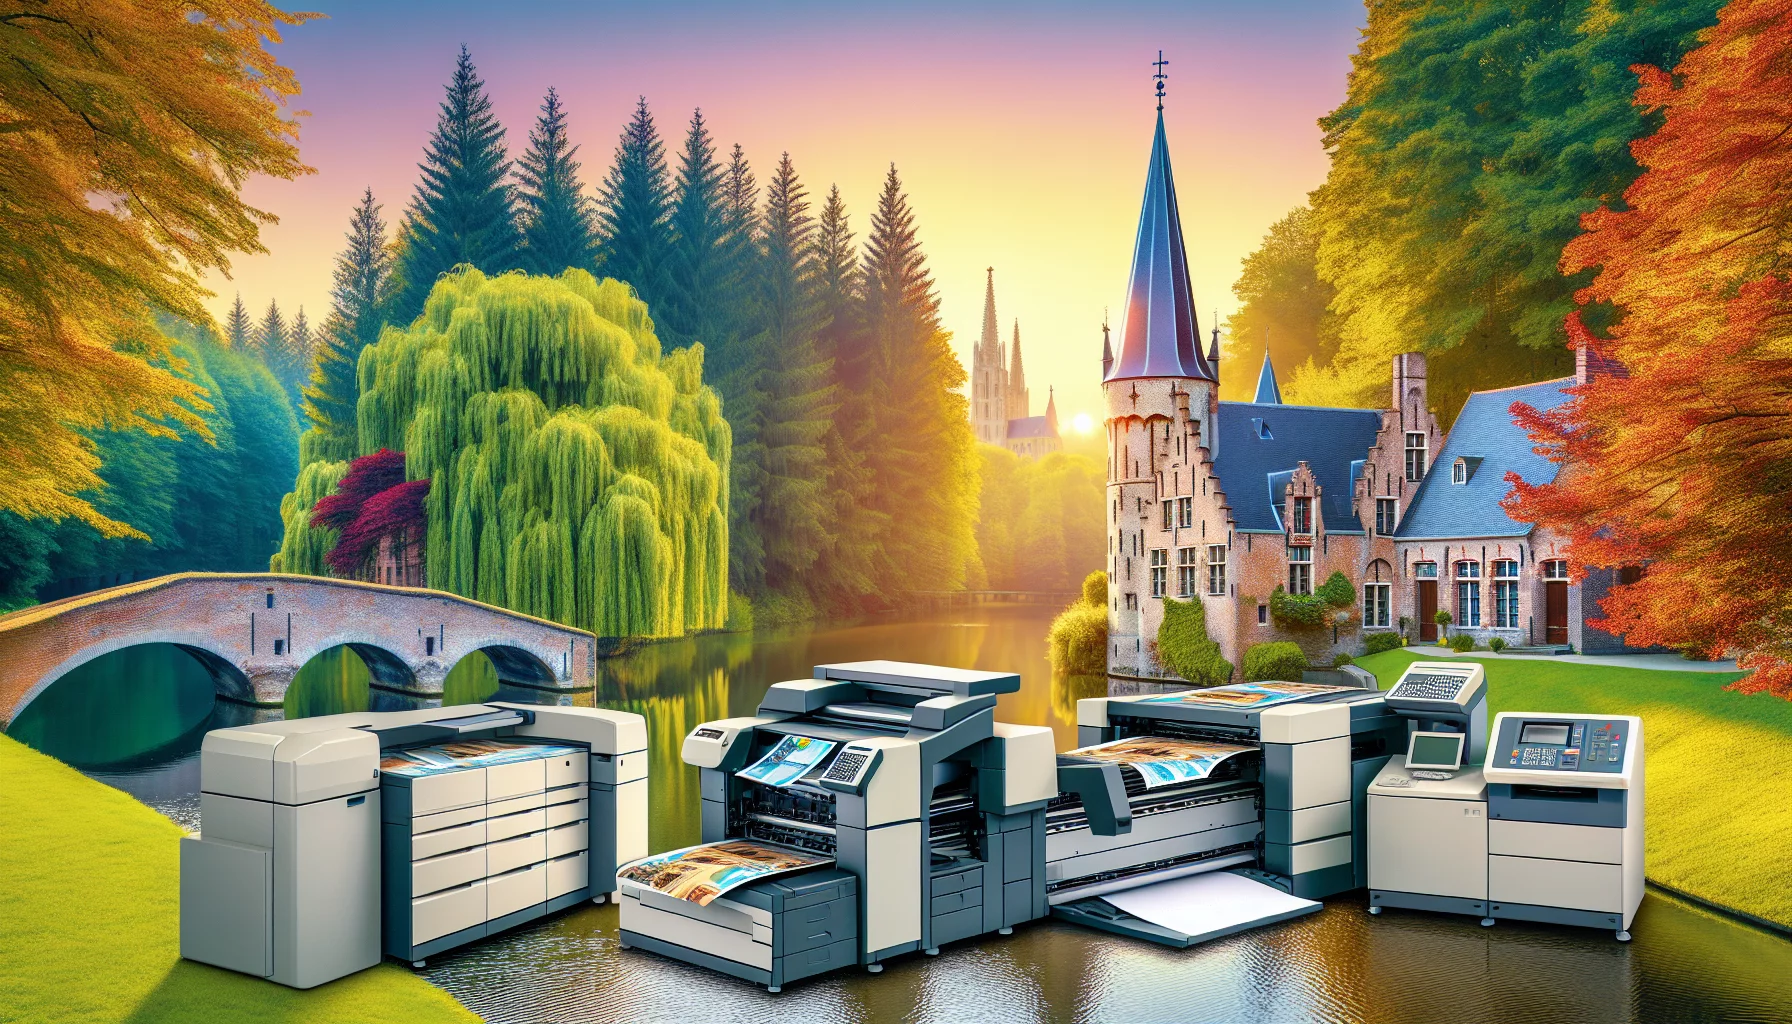 location d'imprimante professionnelle en belgique : découvrez nos entreprises spécialisées dans la location d'imprimantes professionnelles en belgique pour répondre à vos besoins professionnels.